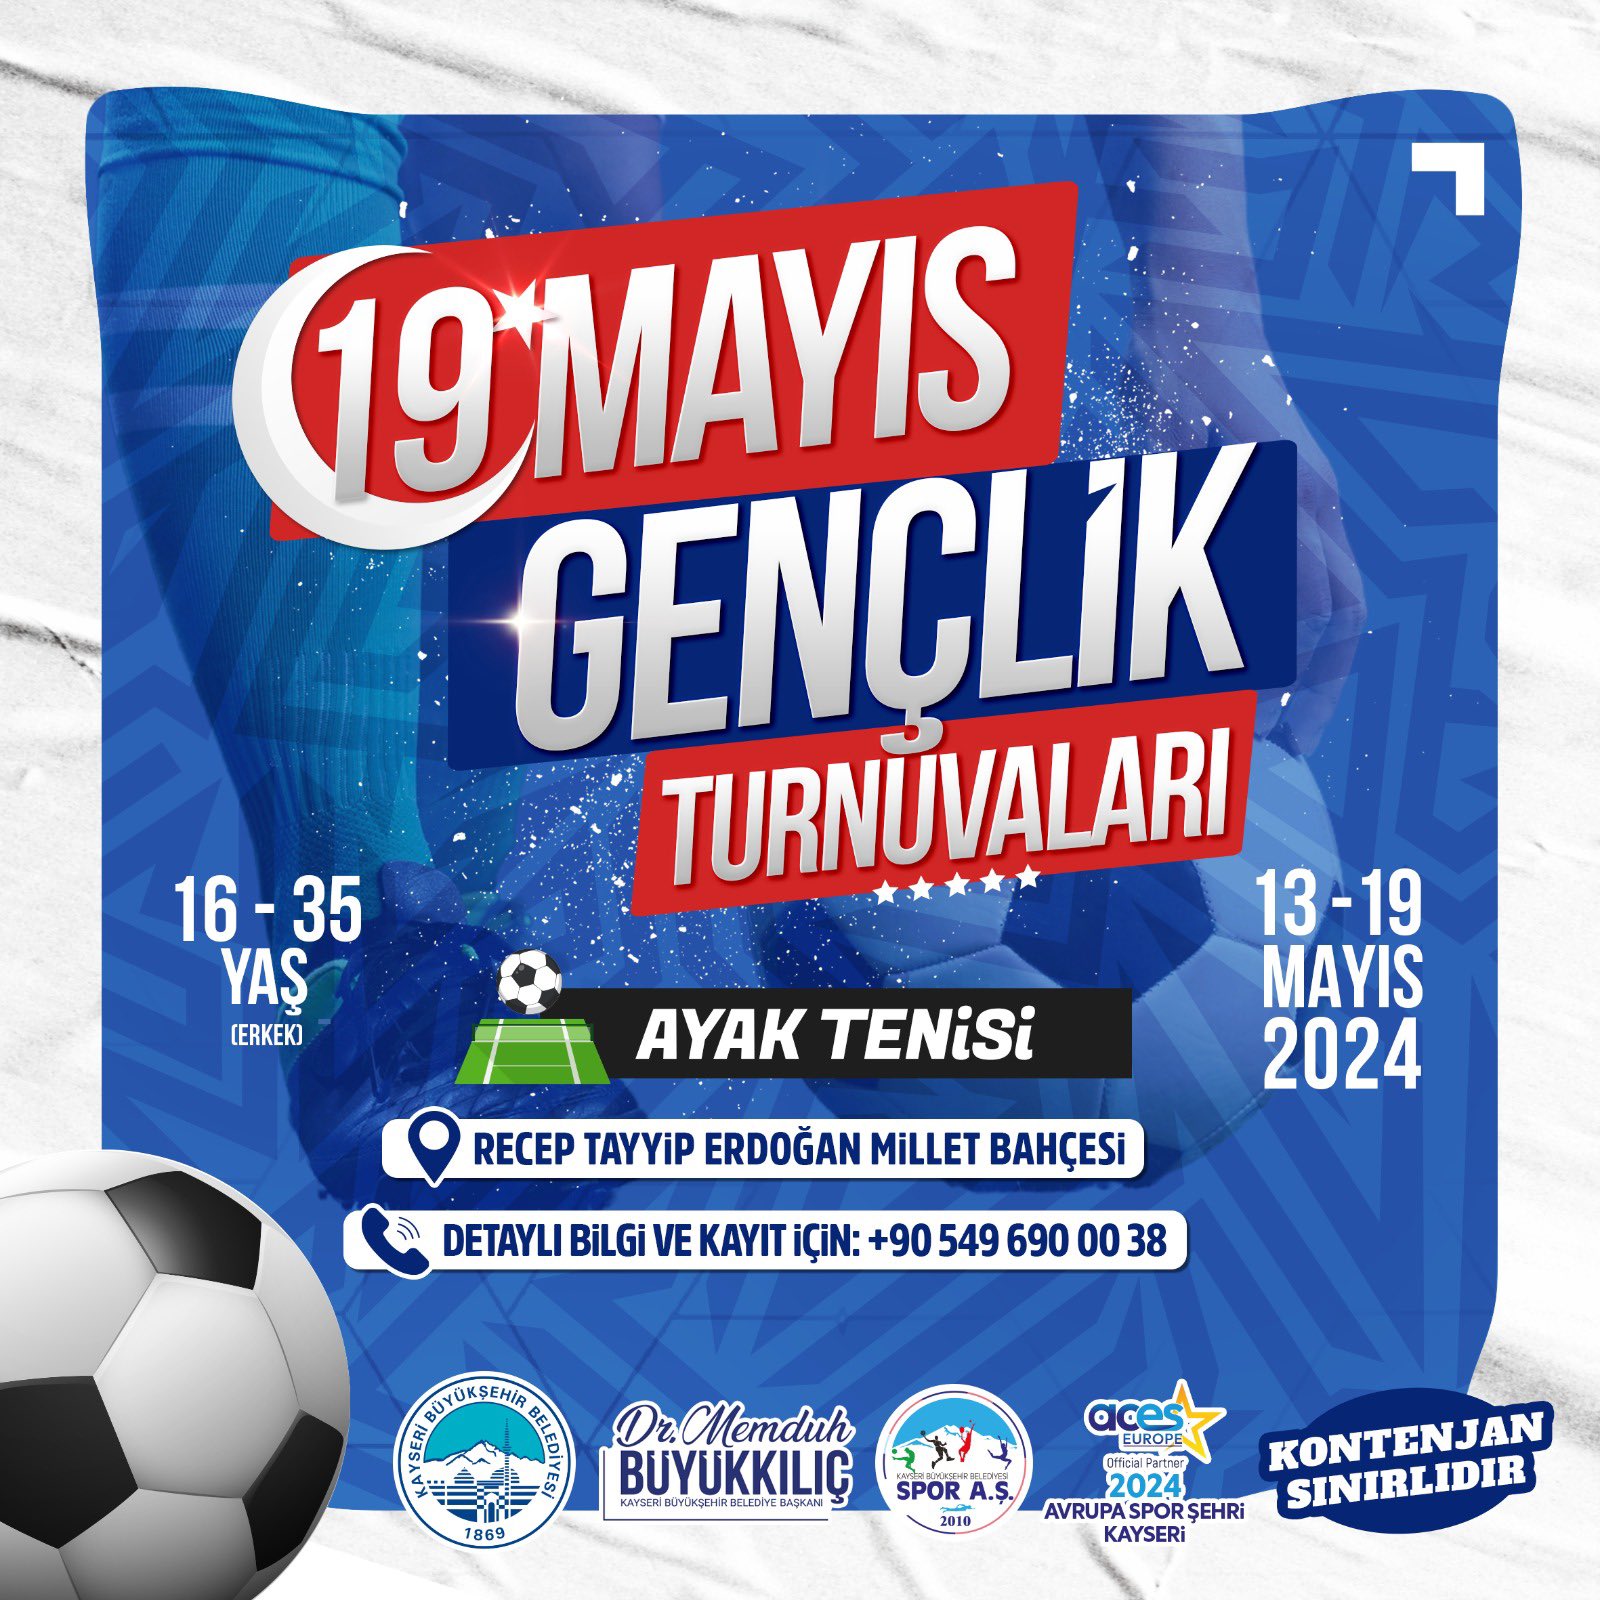 Kayseri'de Gençlik Turnuvaları Kayıtları Açıldı